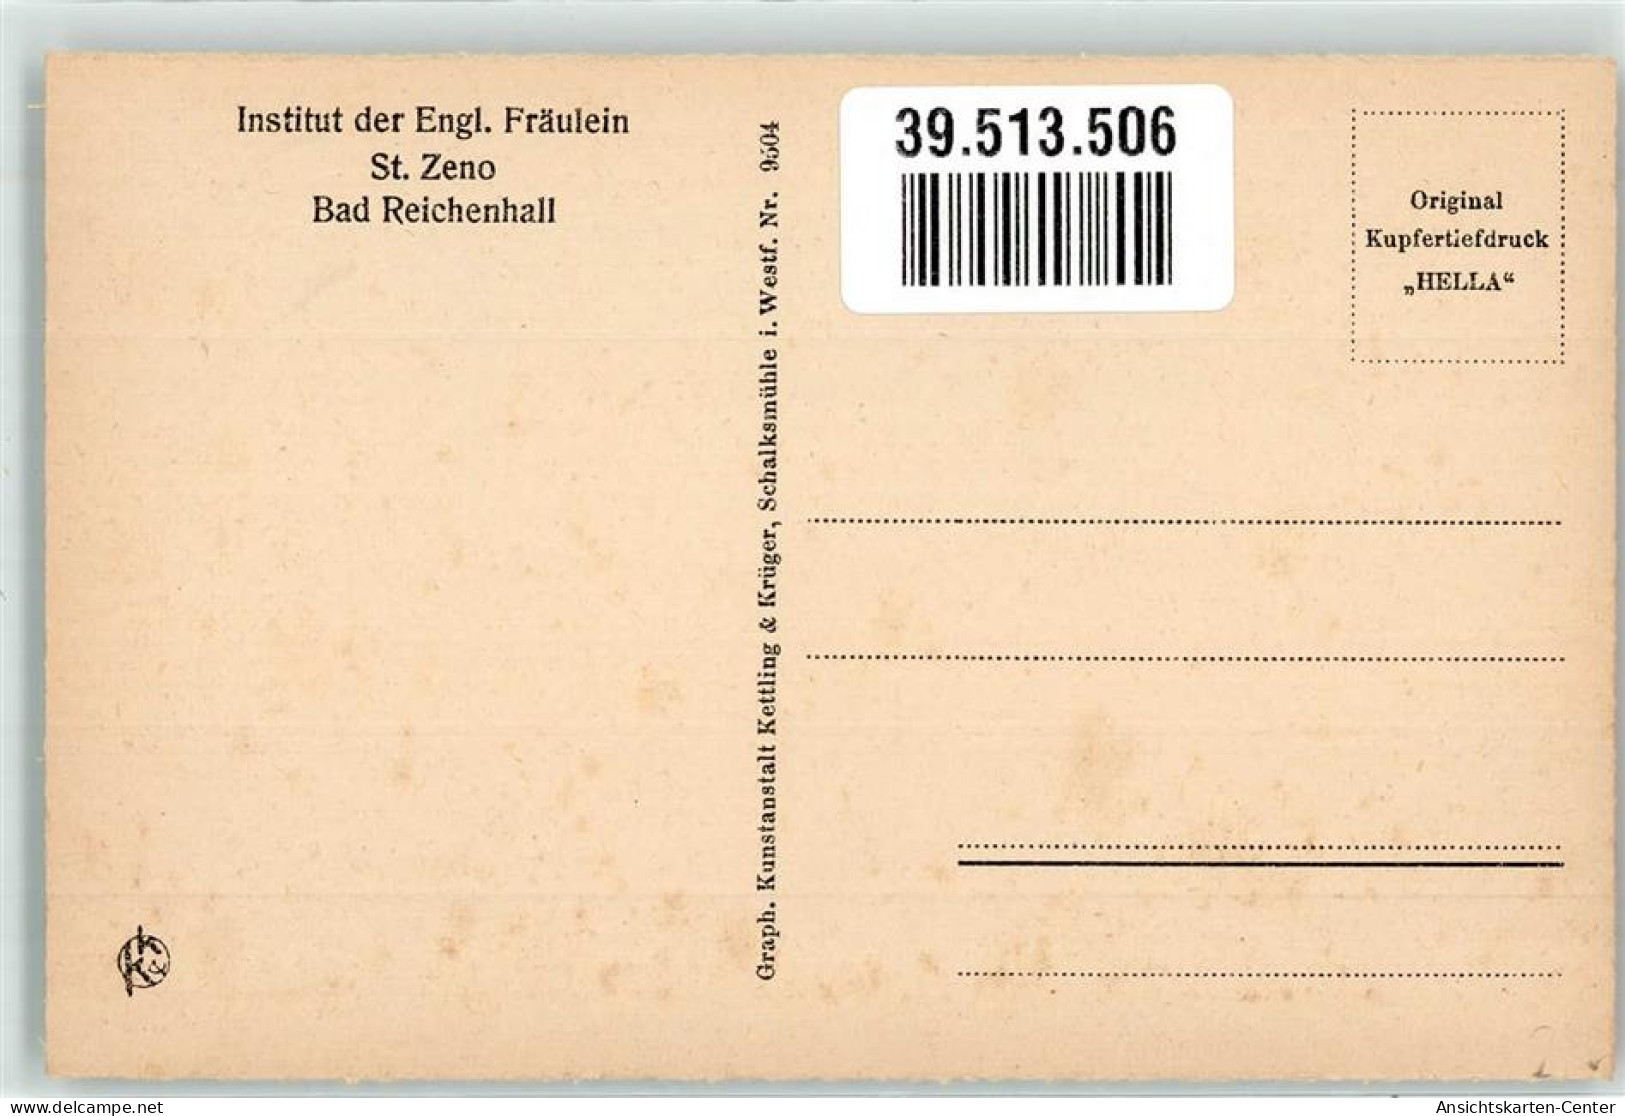 39513506 - Bad Reichenhall - Bad Reichenhall